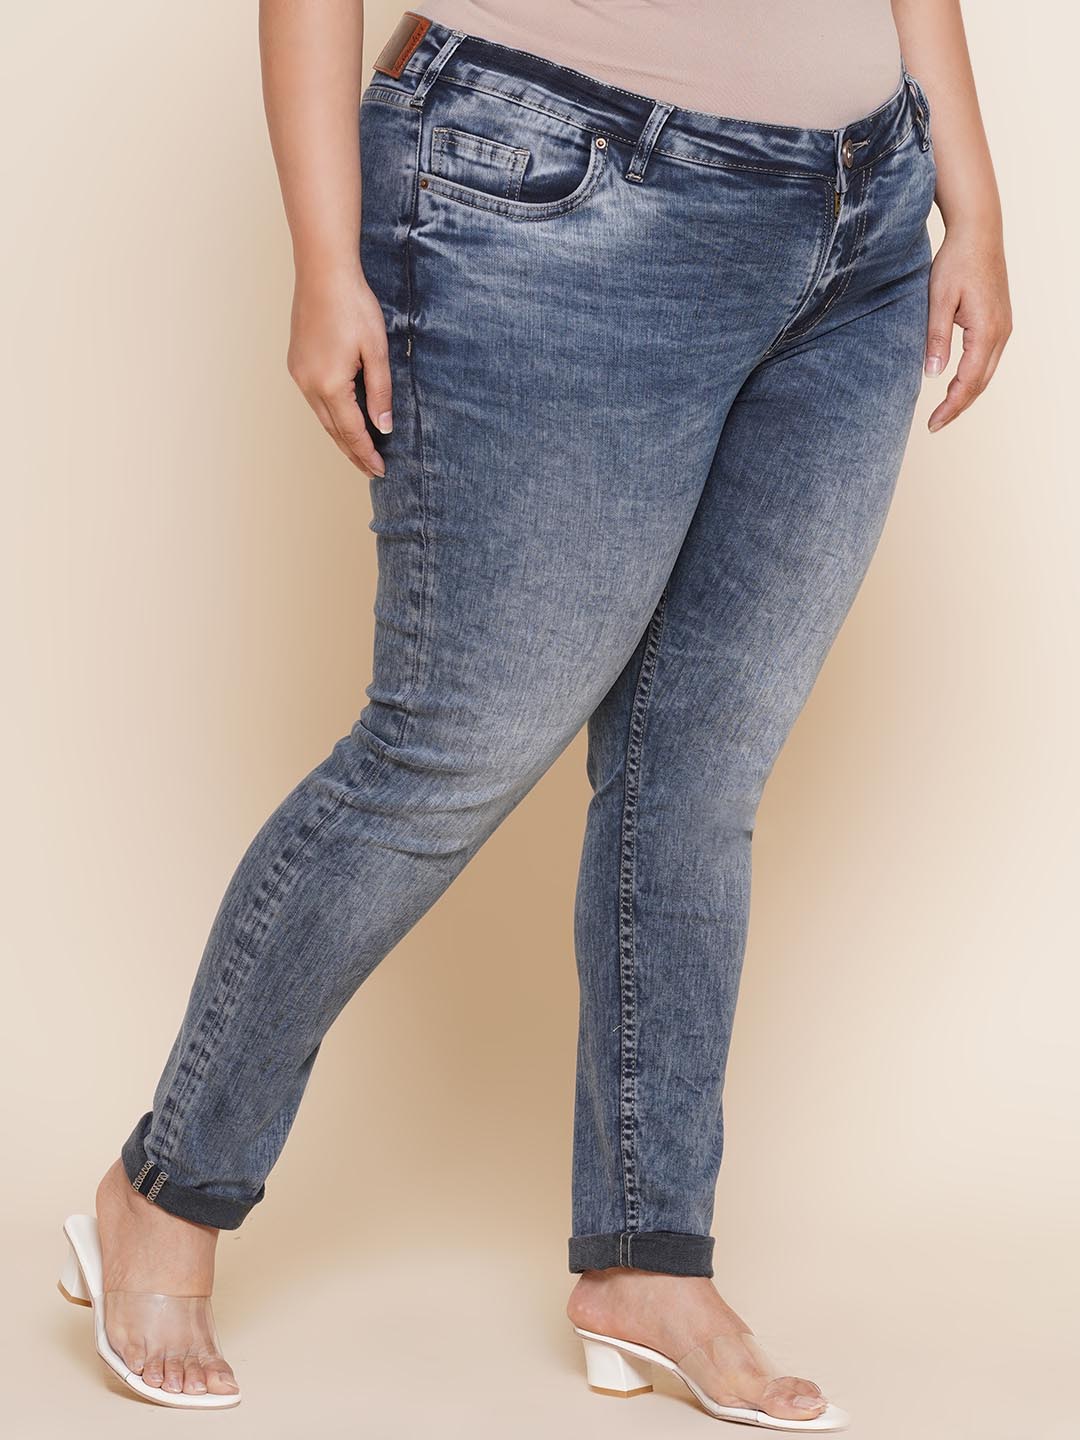 bottomwear_kiaahvi/jeans/KIJ6007/kij6007-4.jpg